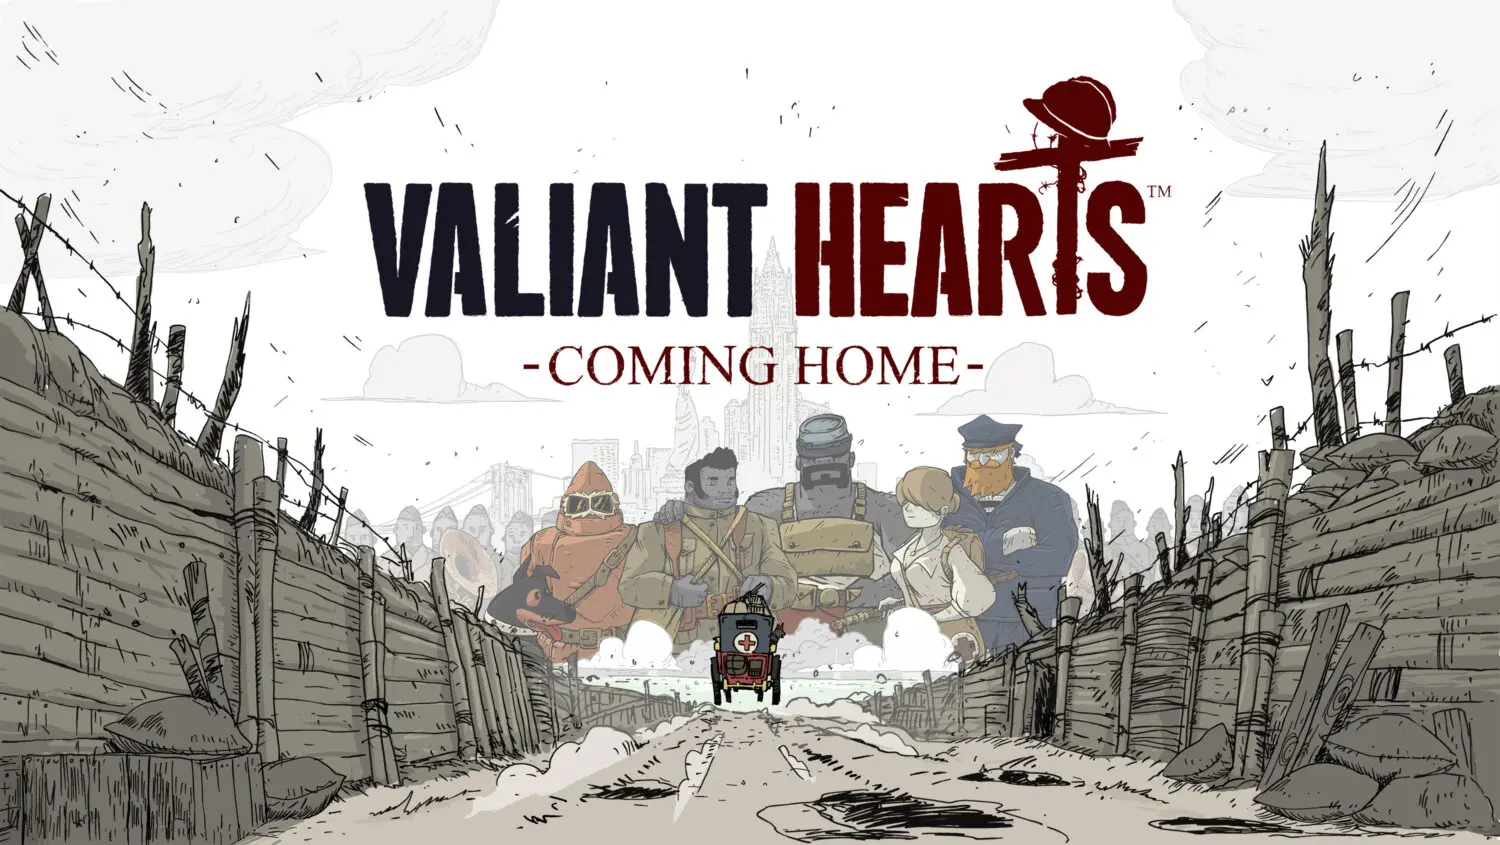 Valiant hearts Old Skull